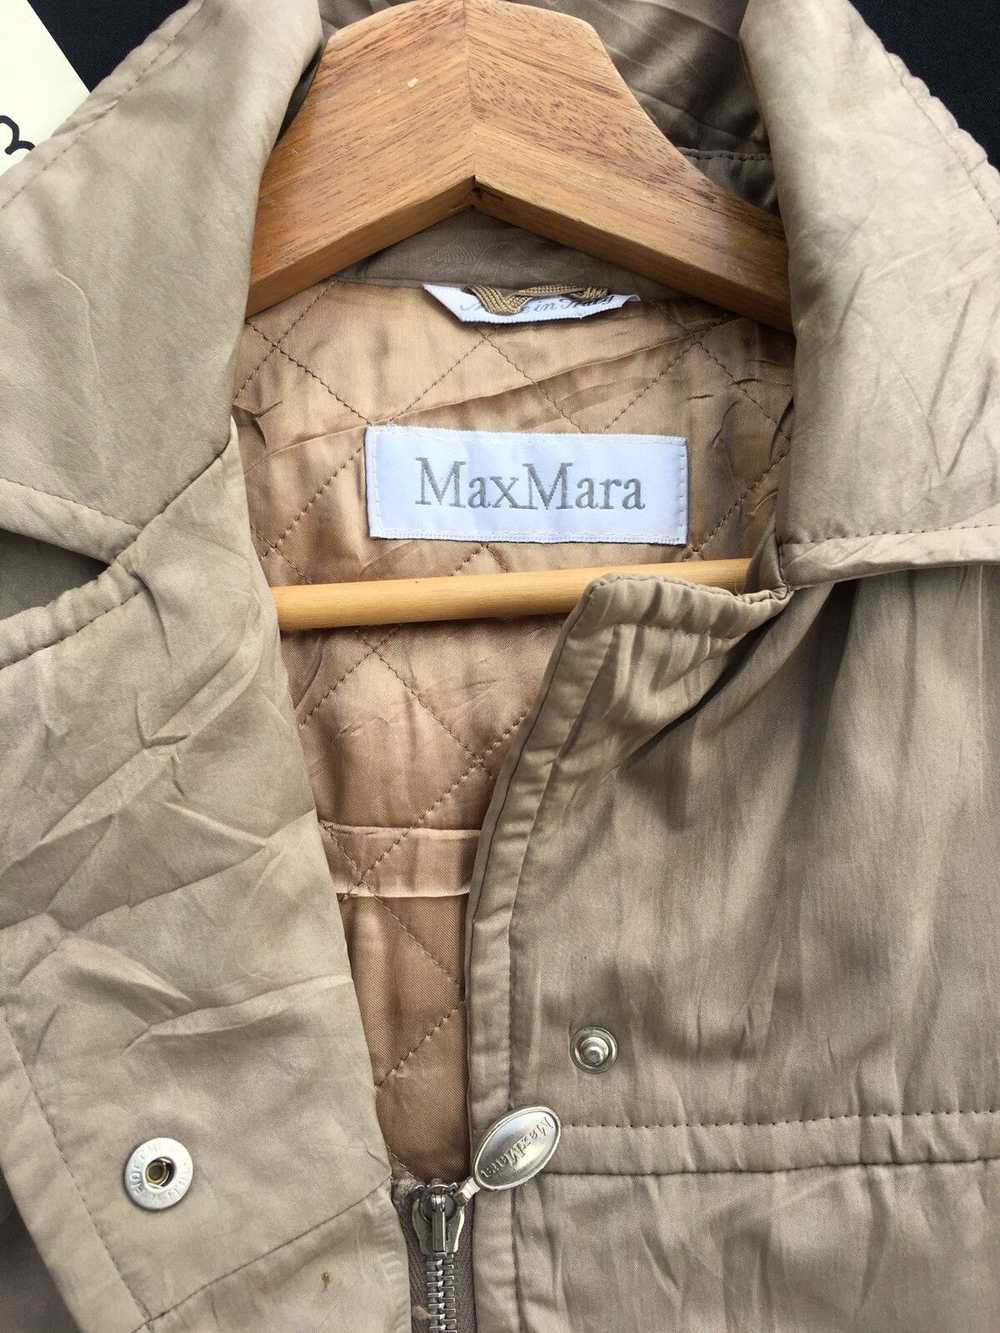 Max Mara Rare Vintage Max Mara Winter Jacket - image 7